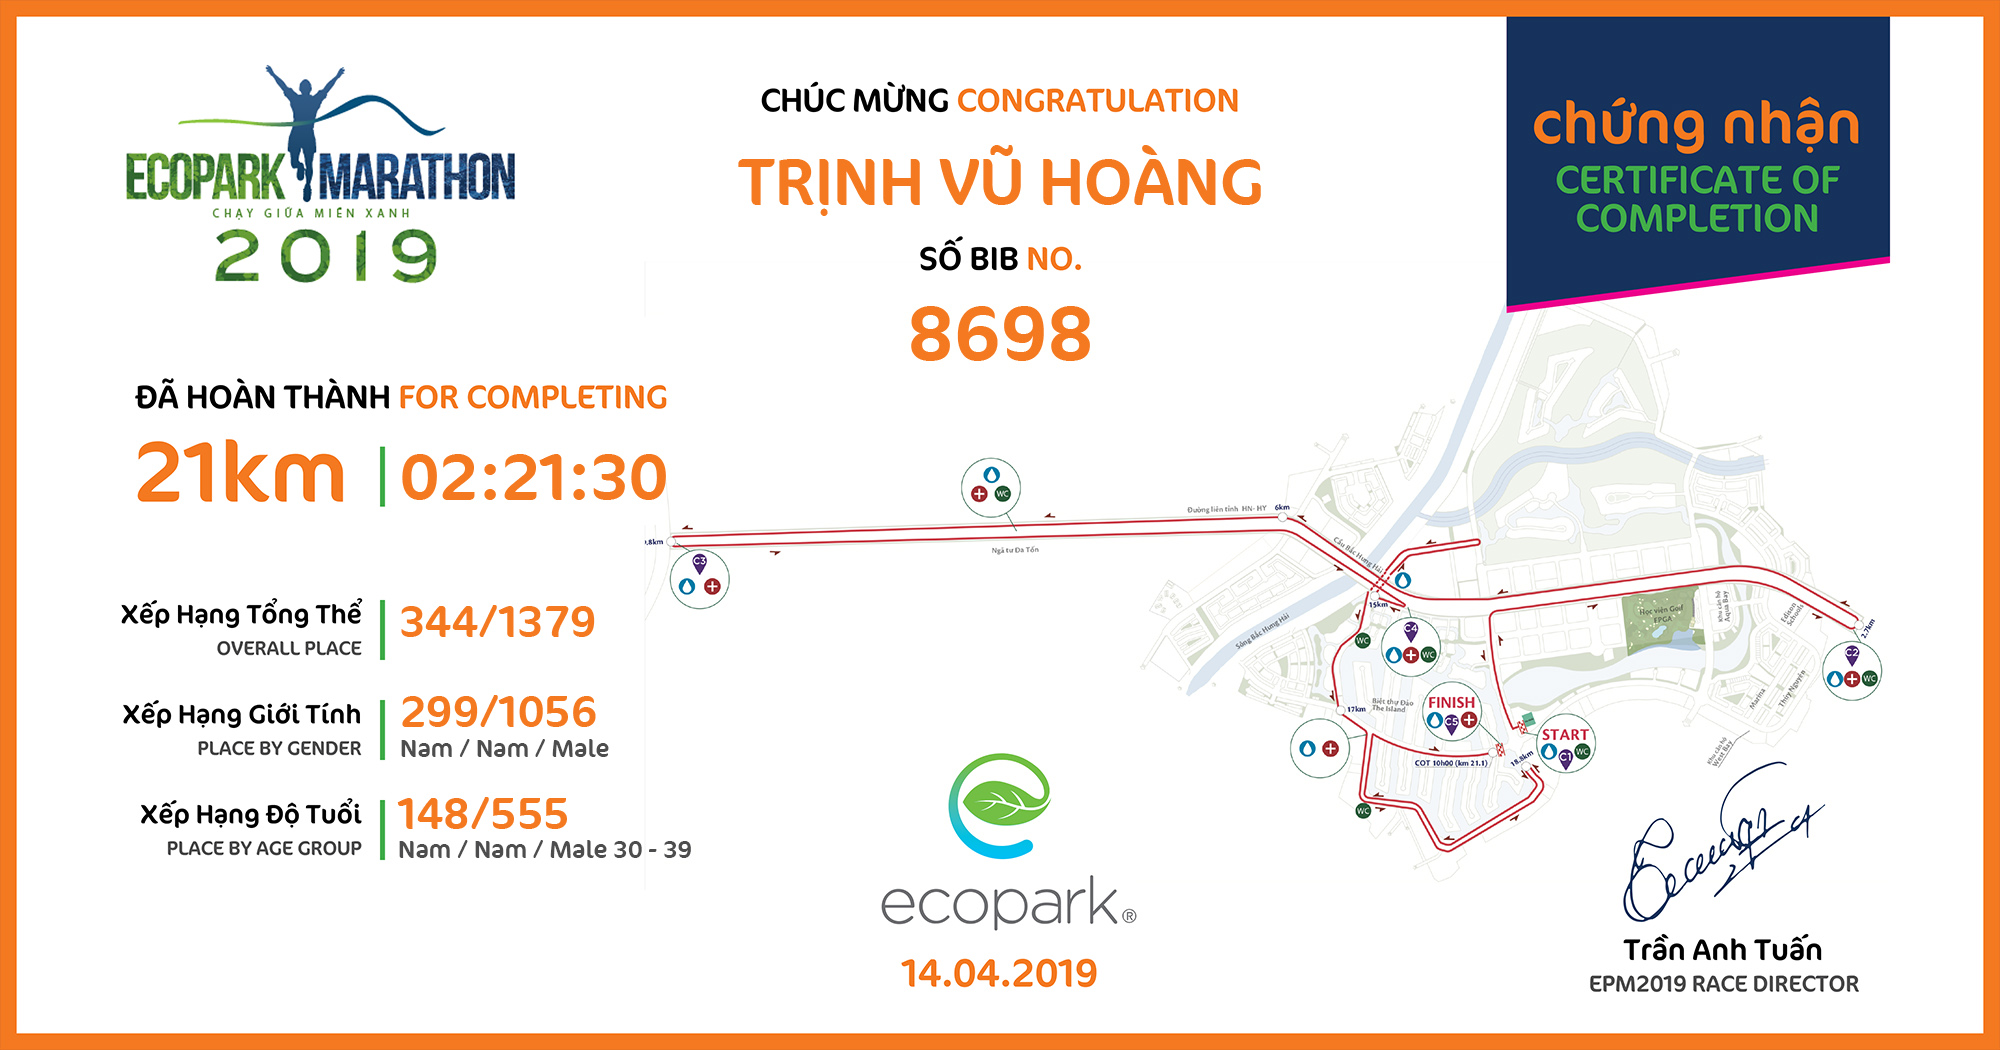 8698 - Trịnh Vũ Hoàng